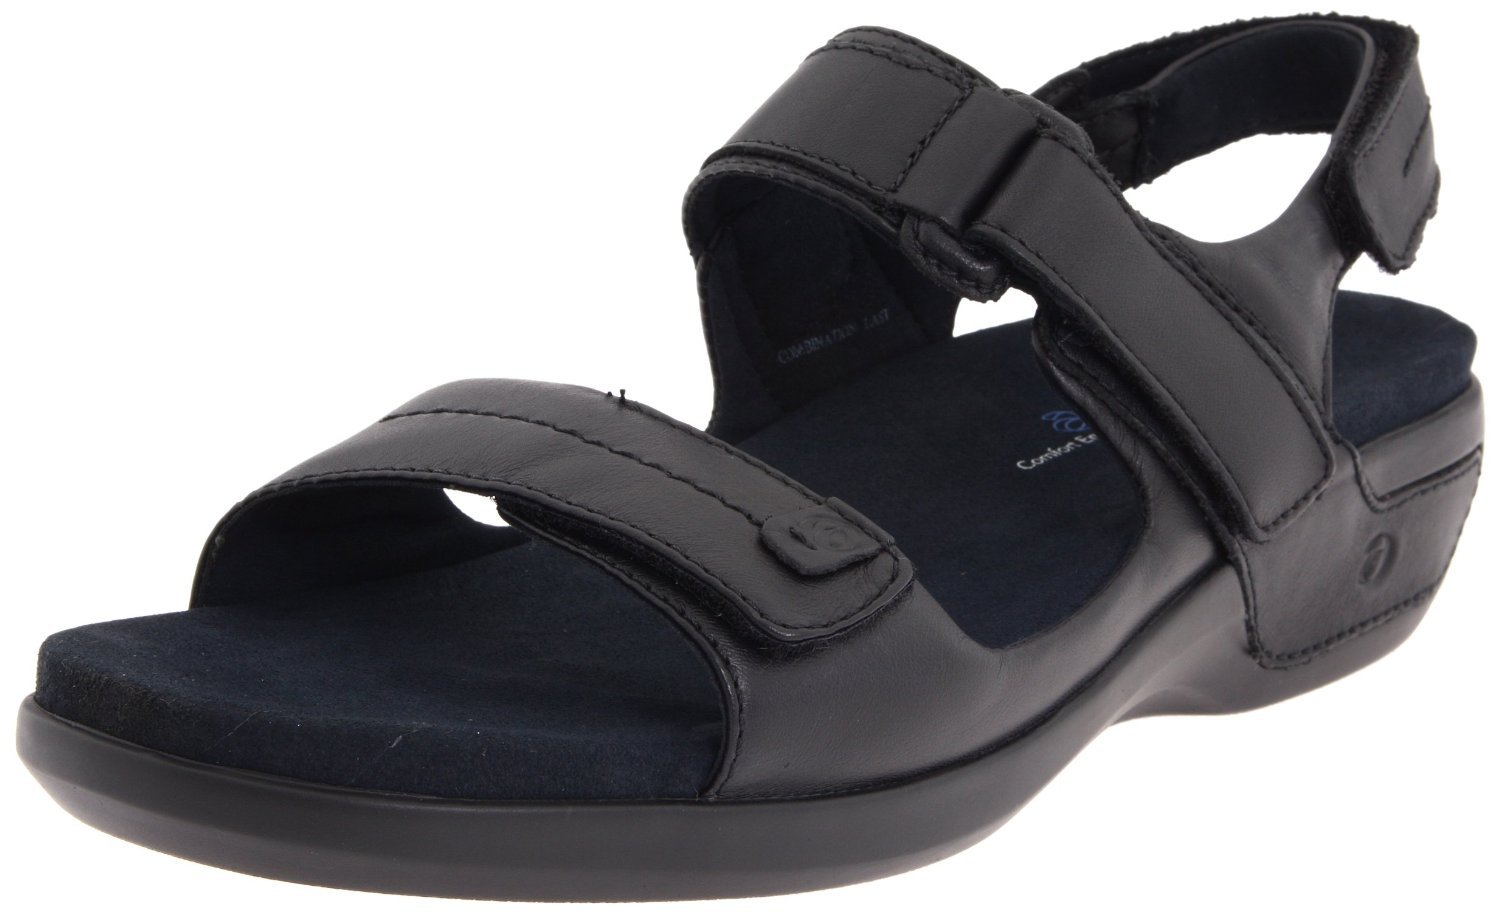 Aravon Katy Sandals - Removable Insoles 